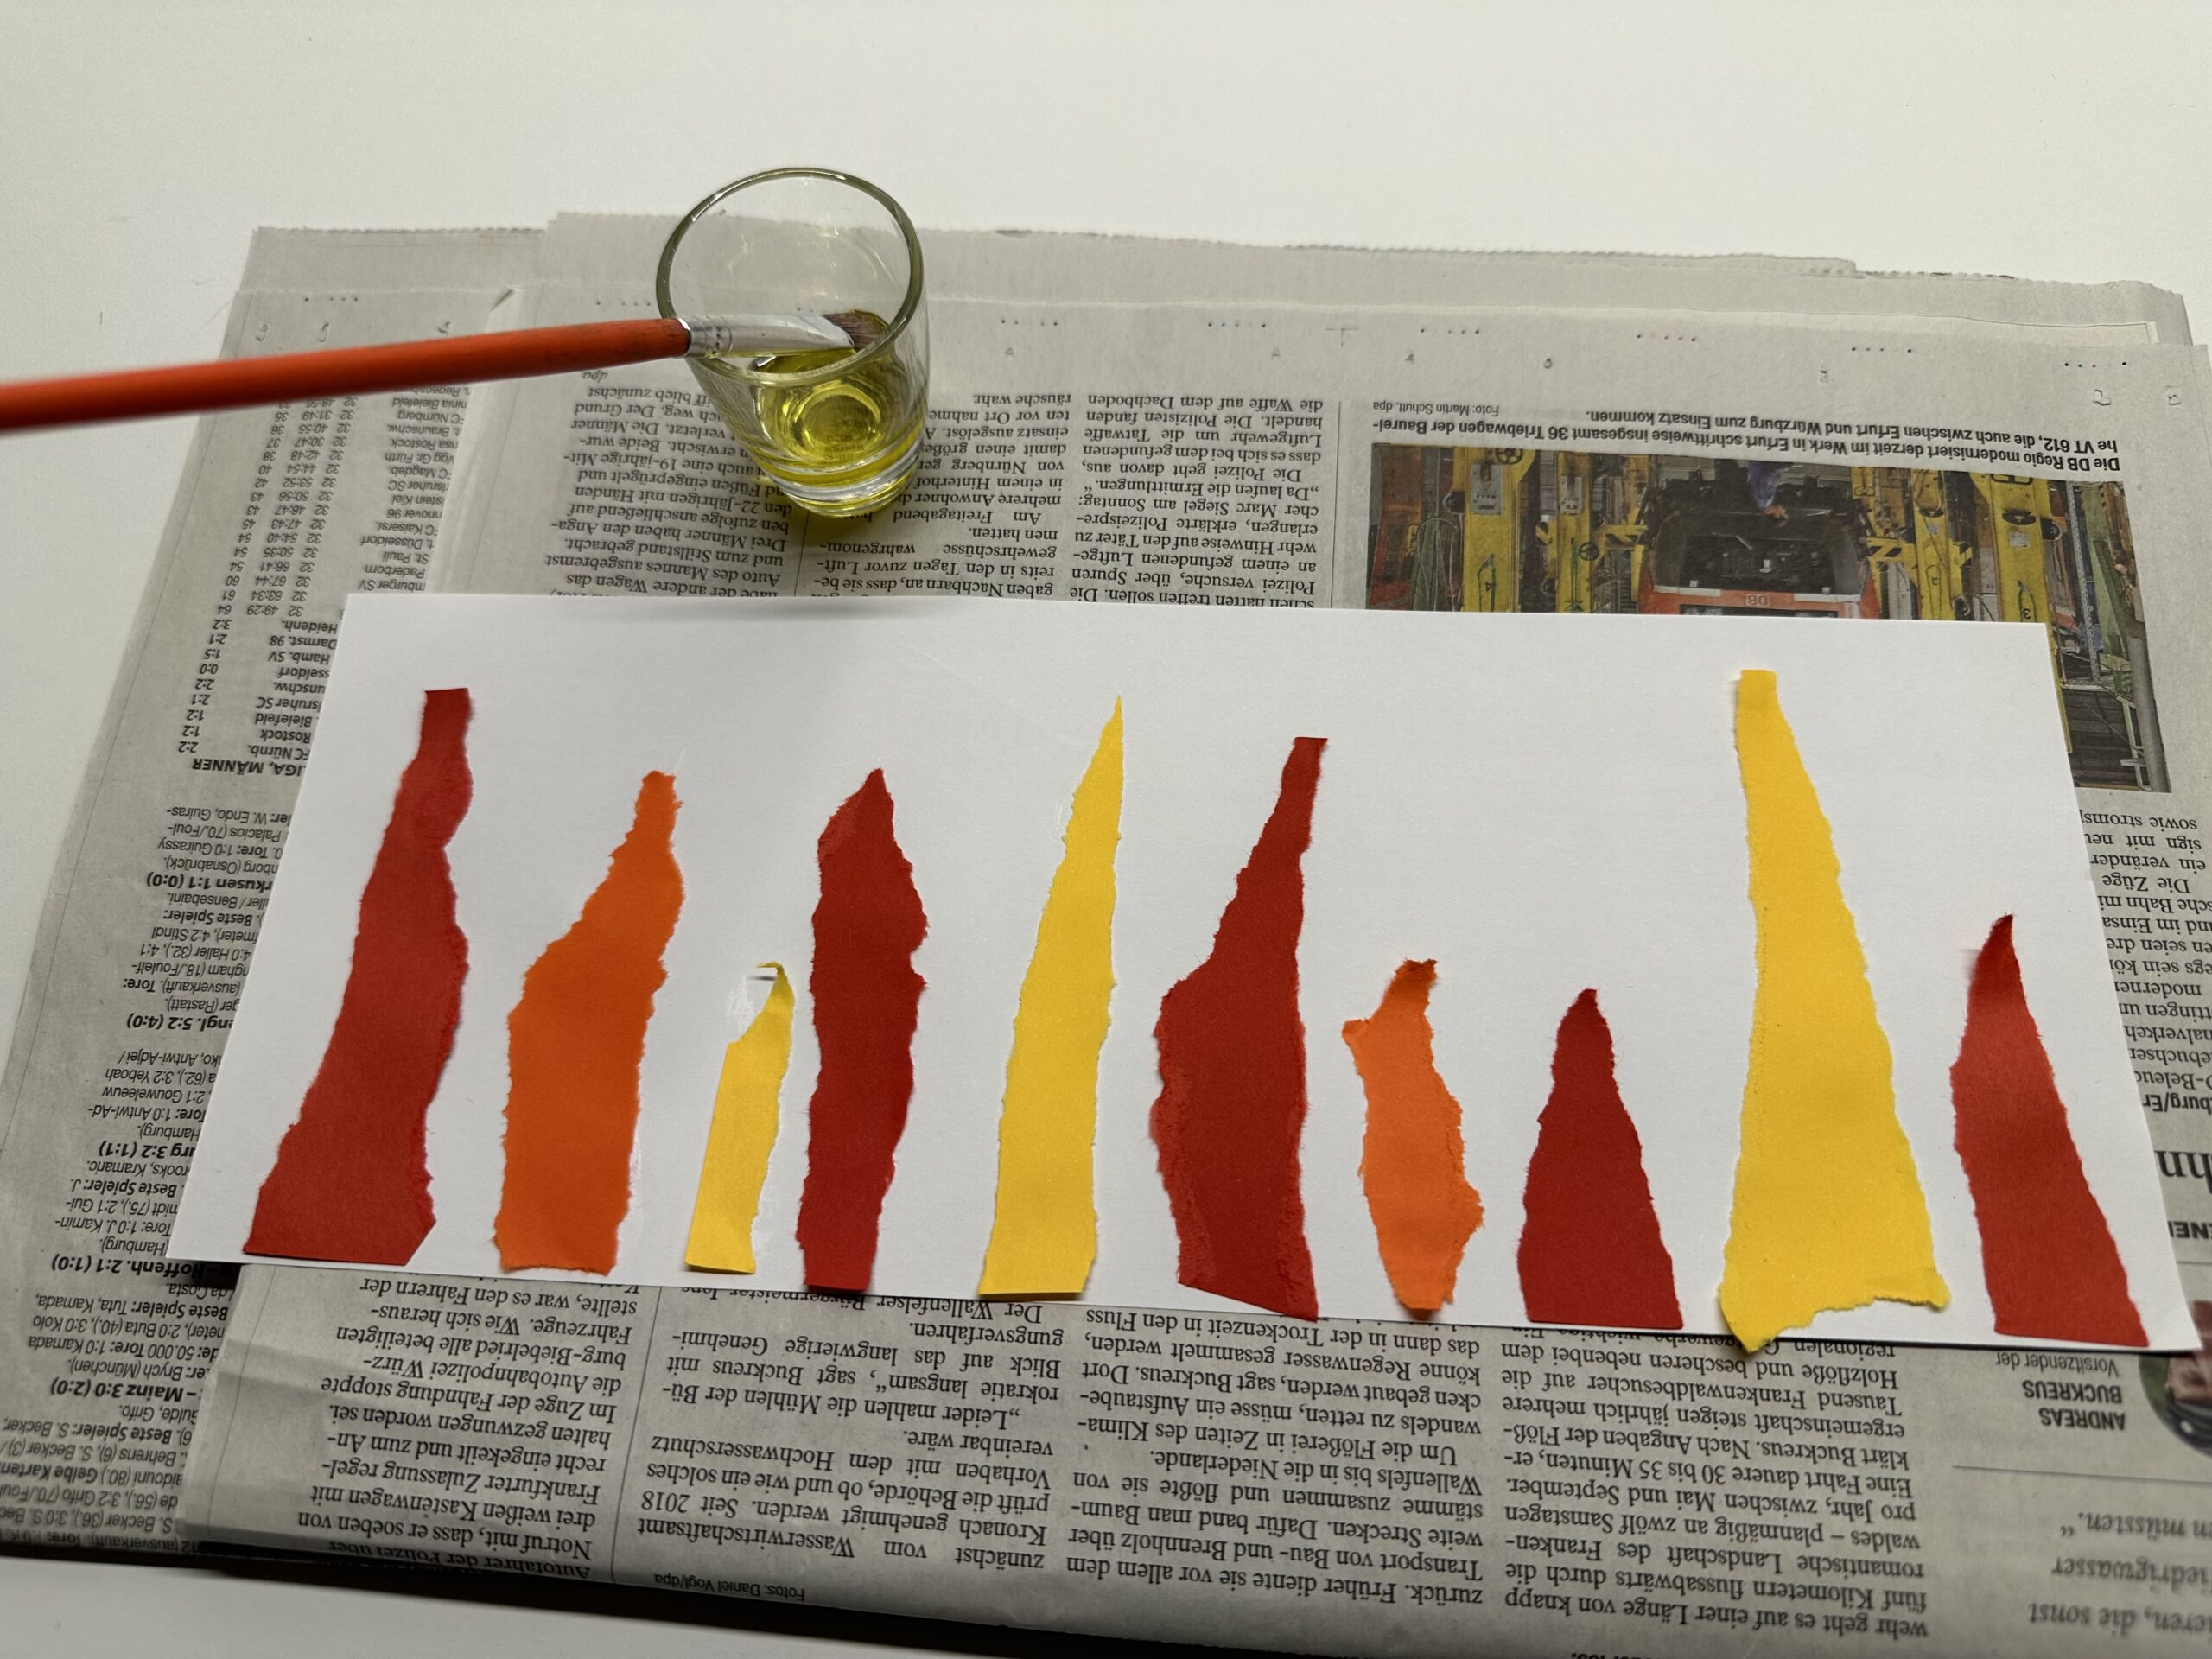 Bild zum Schritt 10 für das Bastel- und DIY-Abenteuer für Kinder: 'Legt das Flammenbild auf ein doppelt gelegtes Zeitungspapier. Stellt ein...'